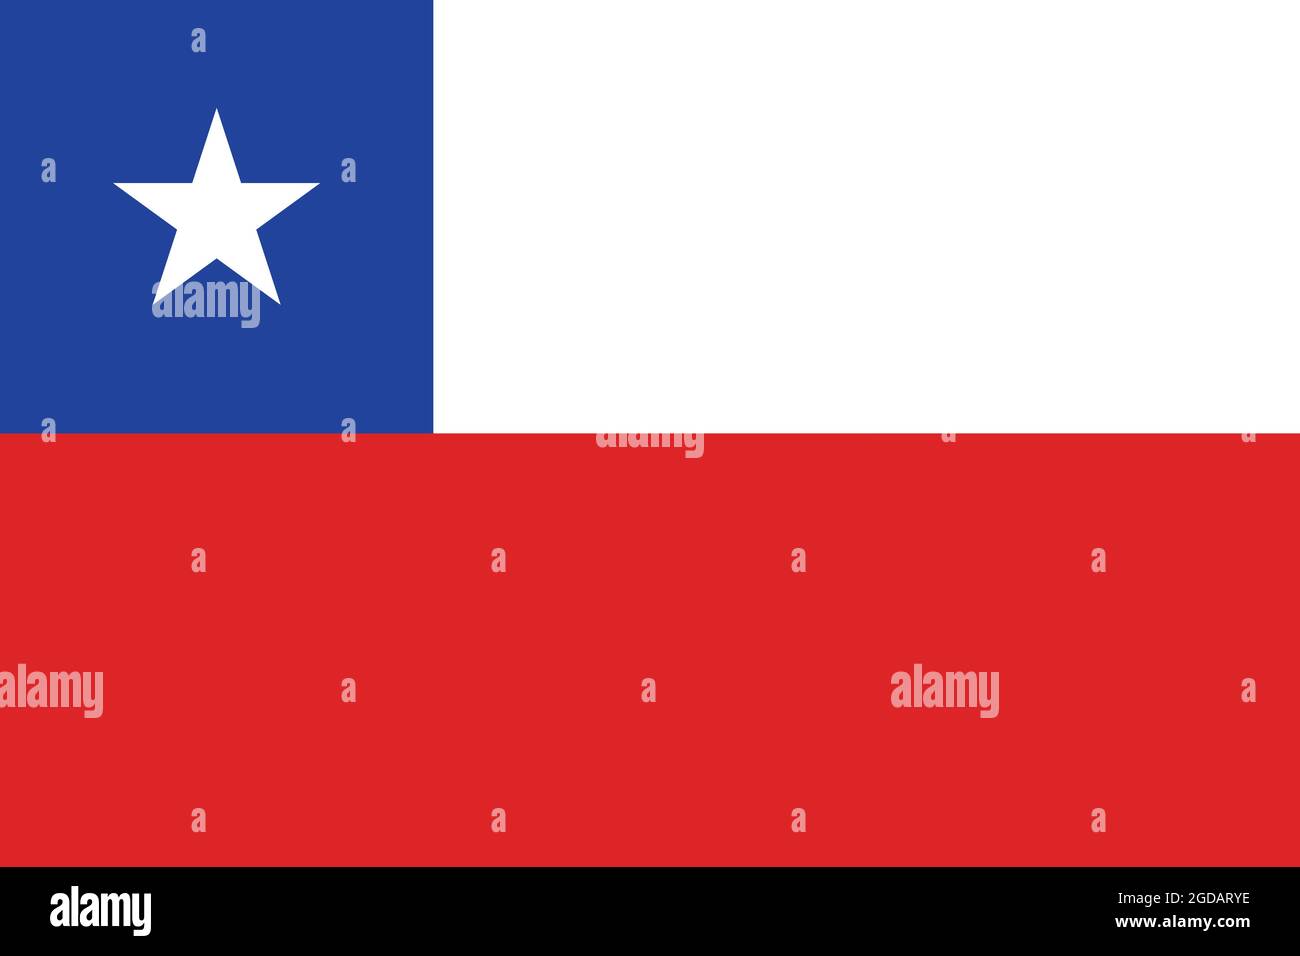 Nationalflagge Chiles Originalgröße und Farben Vektordarstellung, La Estrella Solitaria oder der einfarbige Stern, Flagge der Republik Chile Stock Vektor